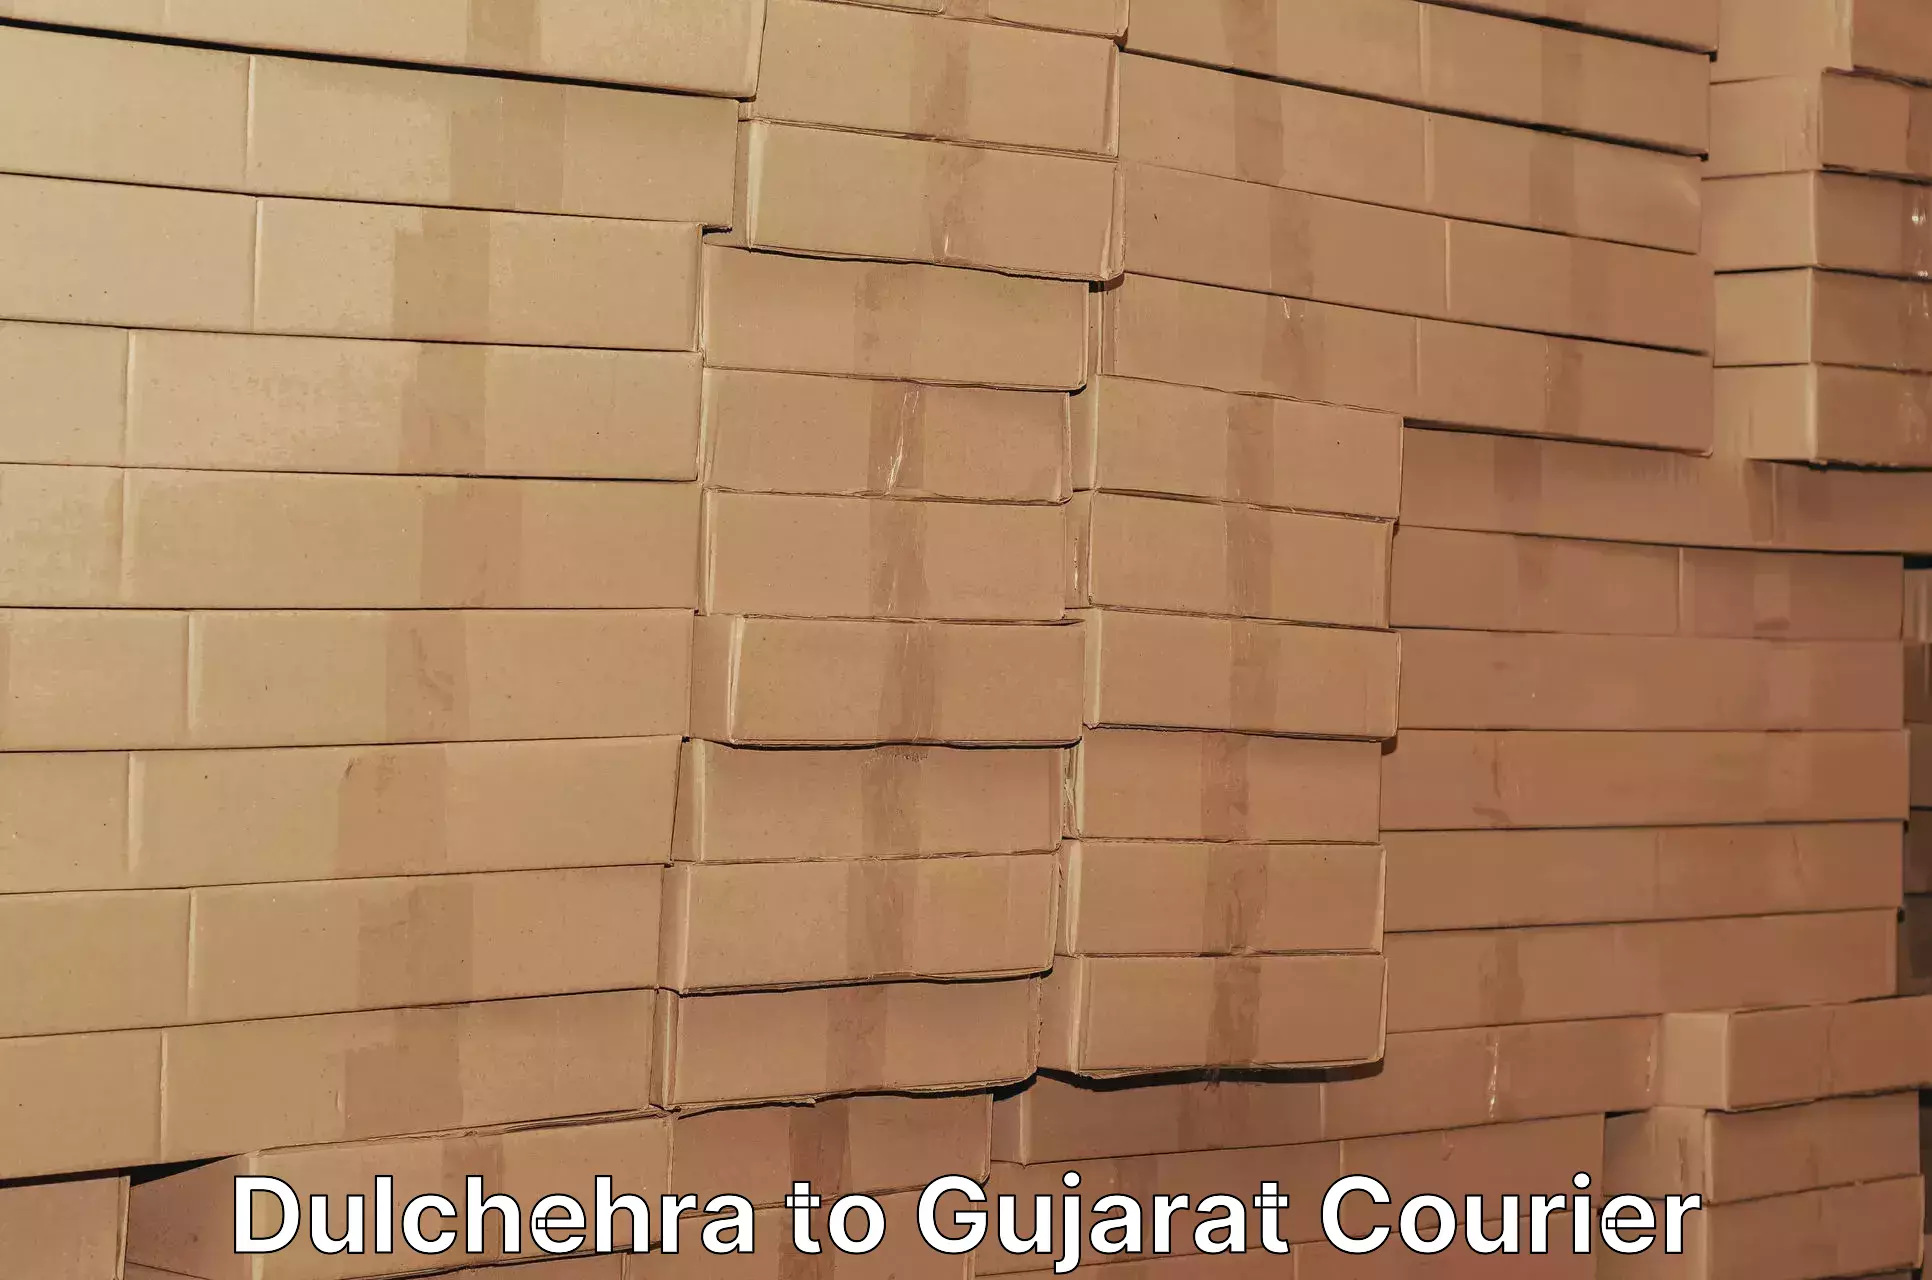 Courier service comparison Dulchehra to Khedbrahma